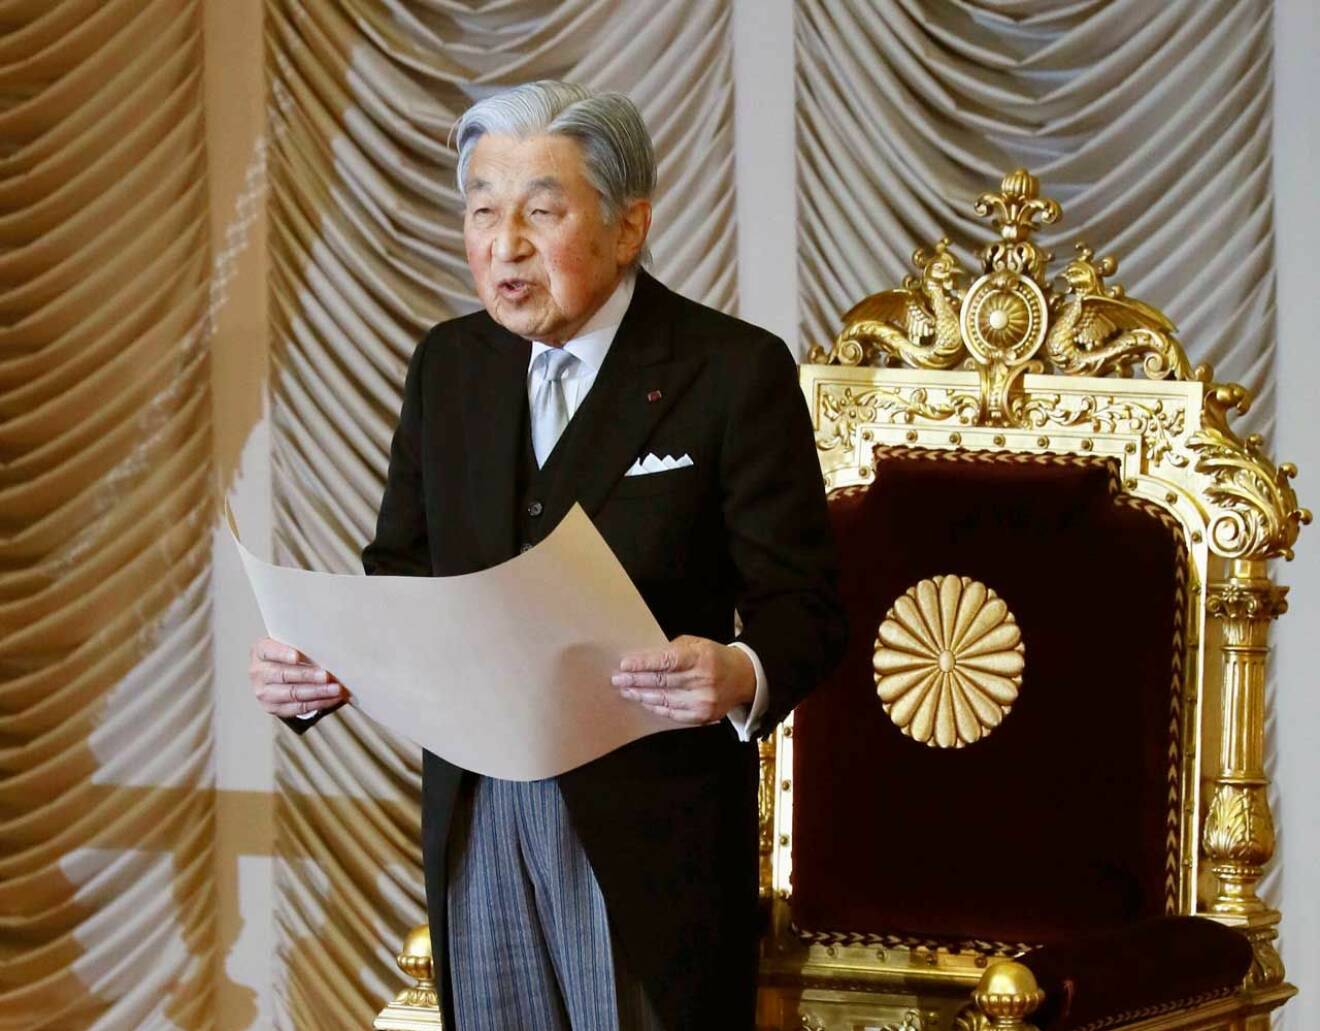 Kejsar Akihito, 85 år, har abdikerat efter 30 år på tronen.